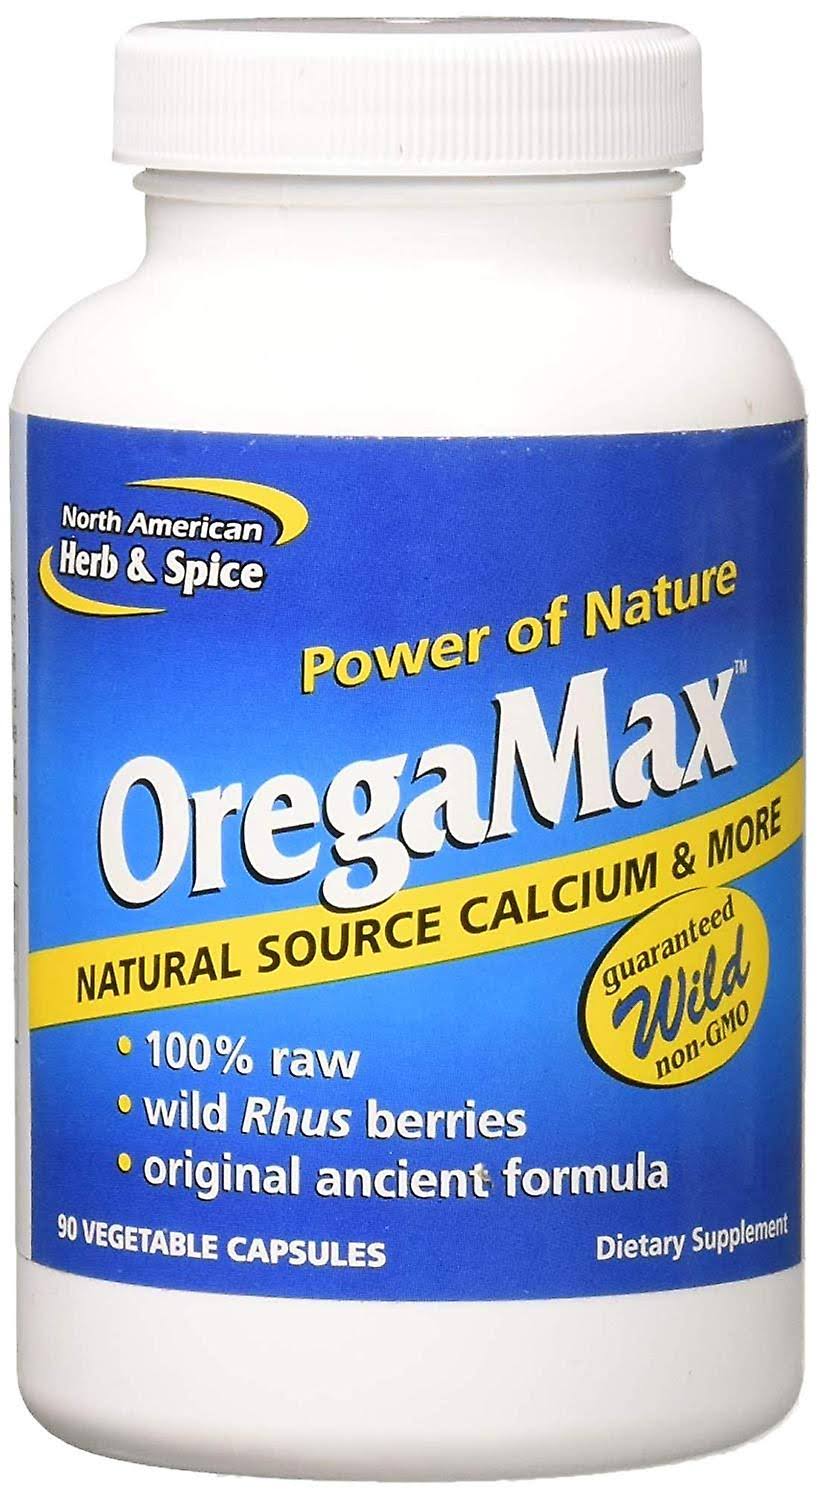 North American Herb & Spice Oregamax - 90 ct